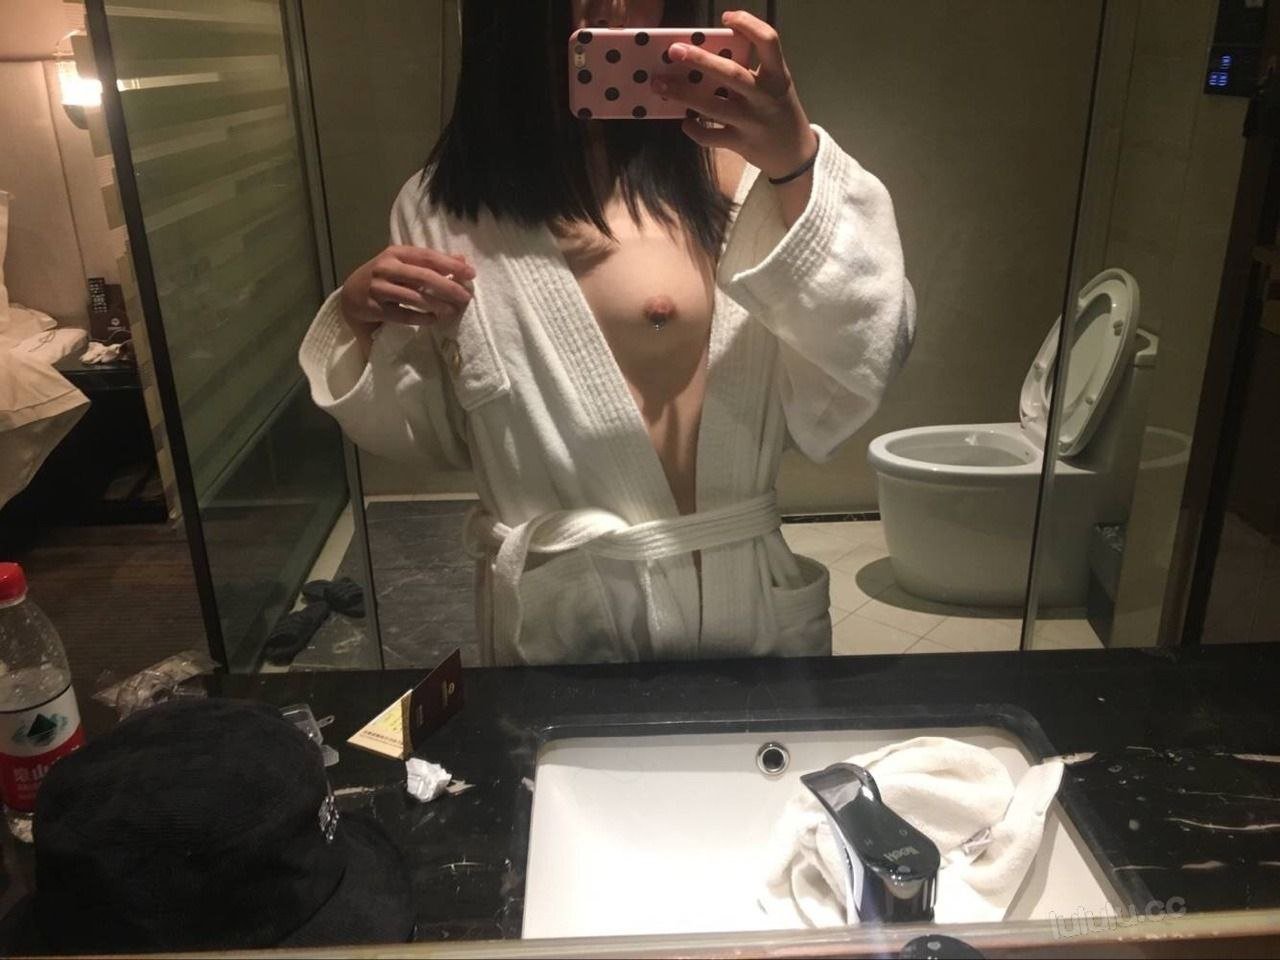 Amateur Asian after sex selfie - Porn